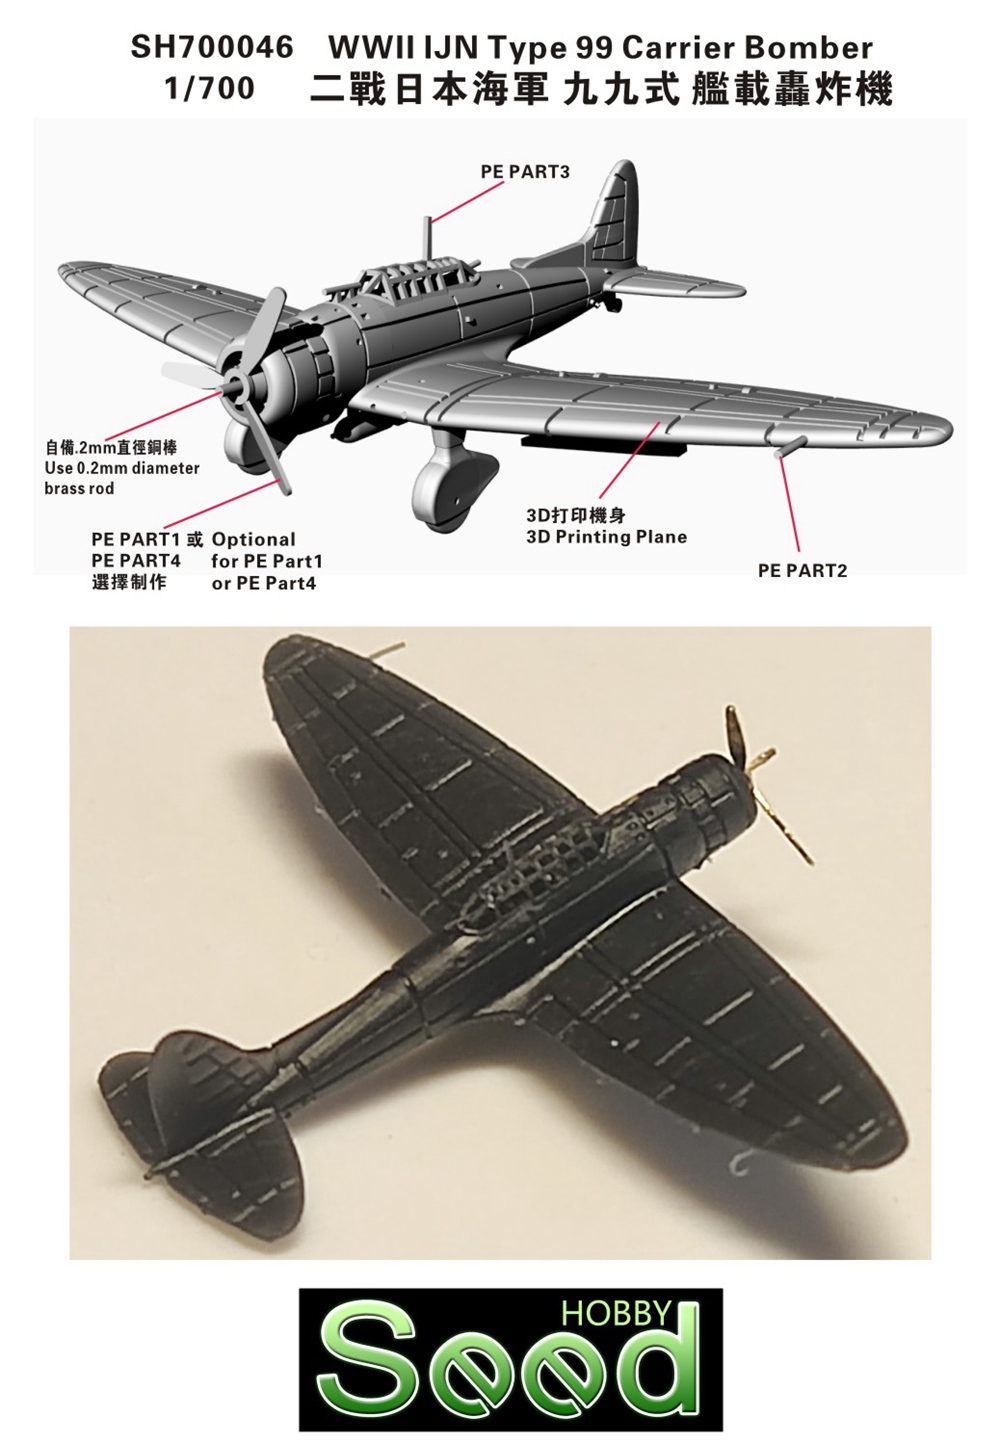 1/700 二战日本海军九九式舰载轰炸机(6架)3D打印产品